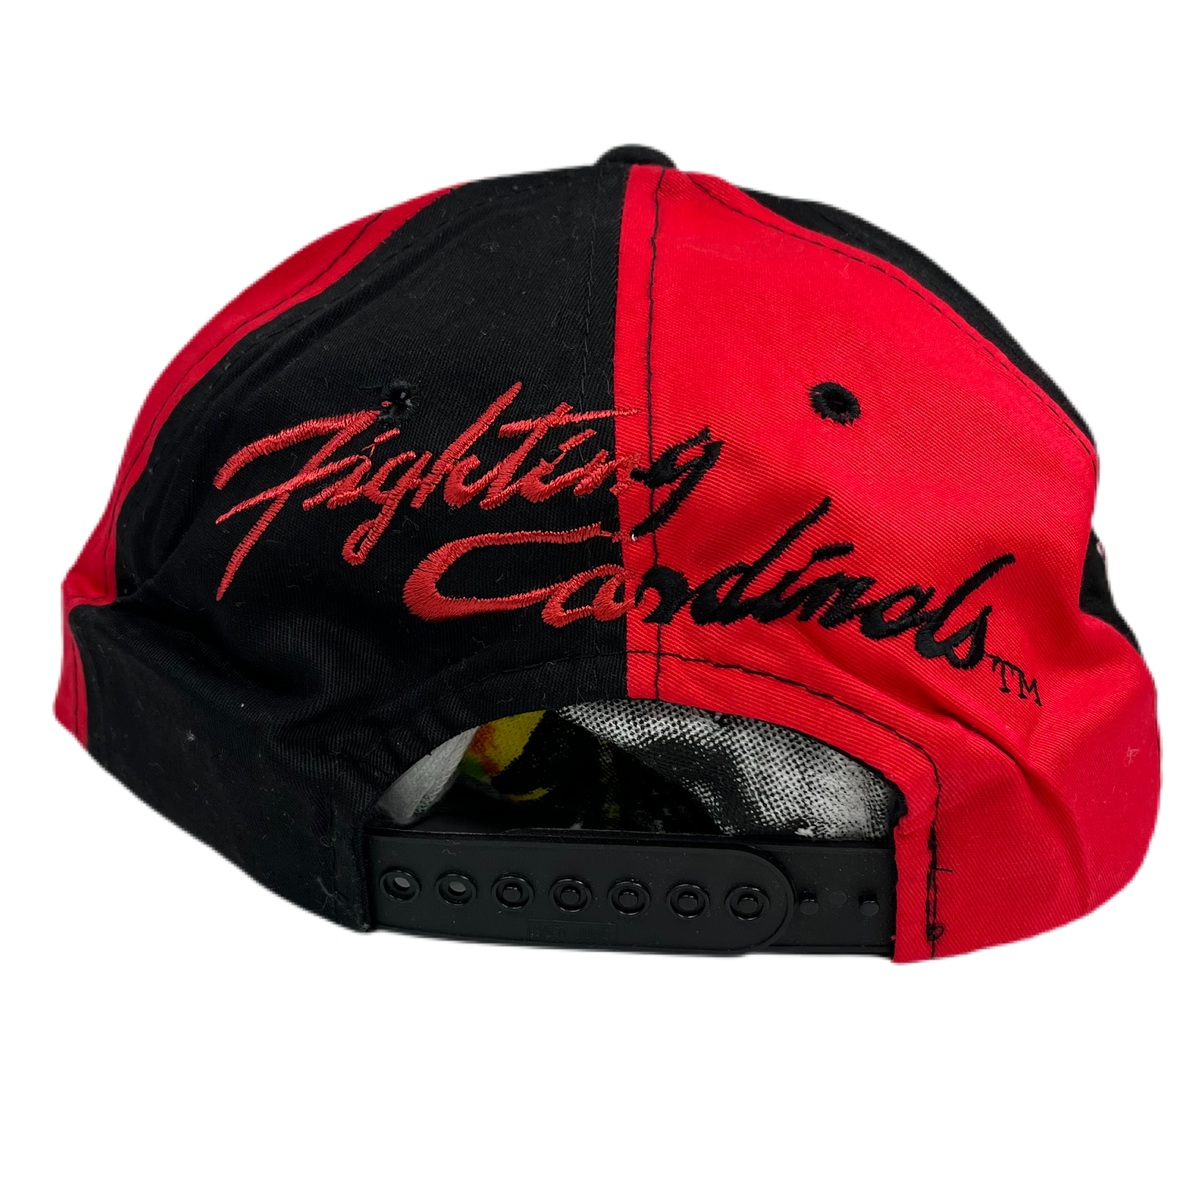 Vintage Louisville &quot;Fighting Cardinals&quot; Hat